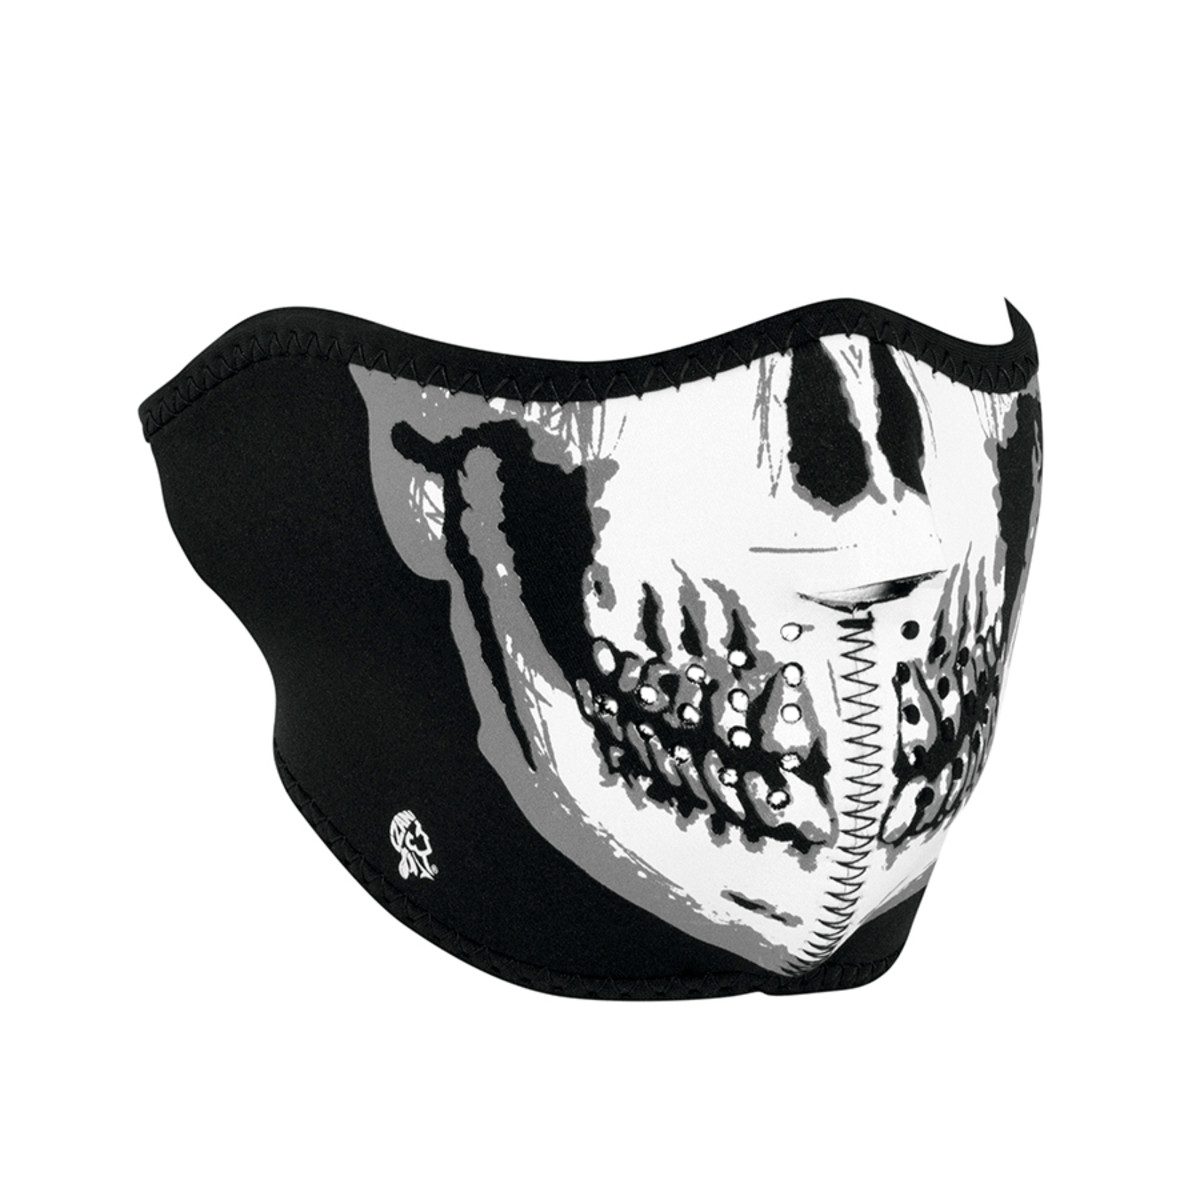 Zan Headgear Neoprene Half-Face Mask - Skull Face